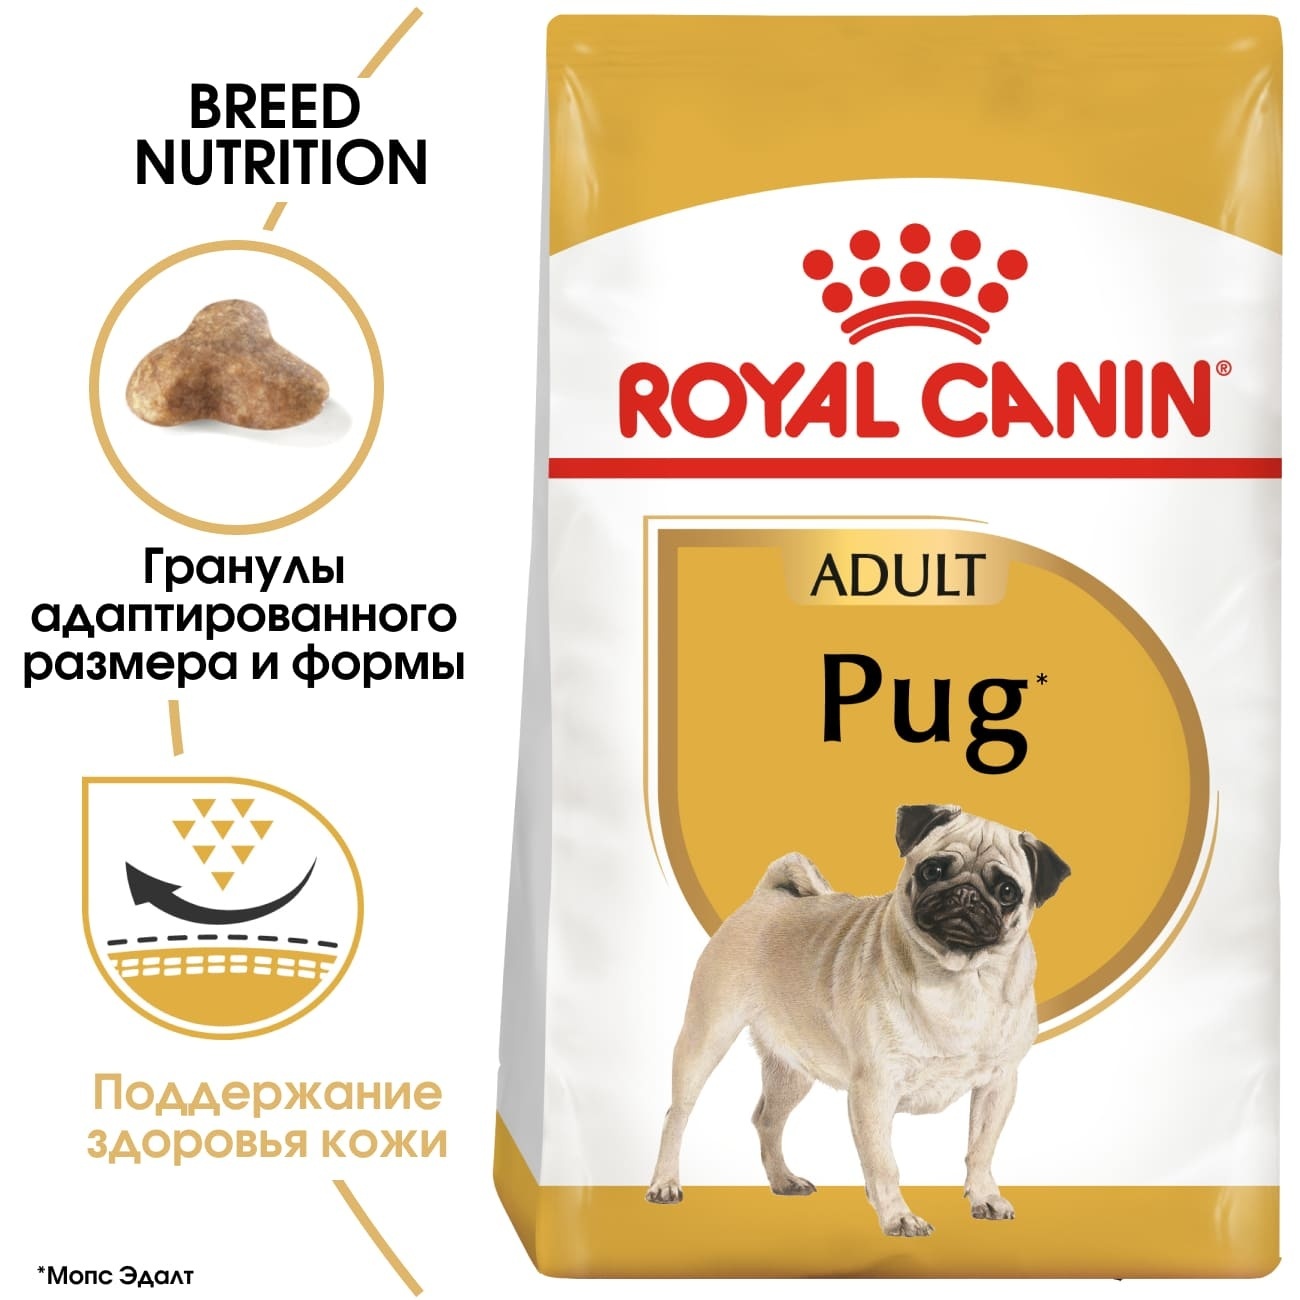 Для взрослого мопса с 10 мес. (7,5 кг) Royal Canin (сухие корма) Для взрослого мопса с 10 мес. (7,5 кг) - фото 2